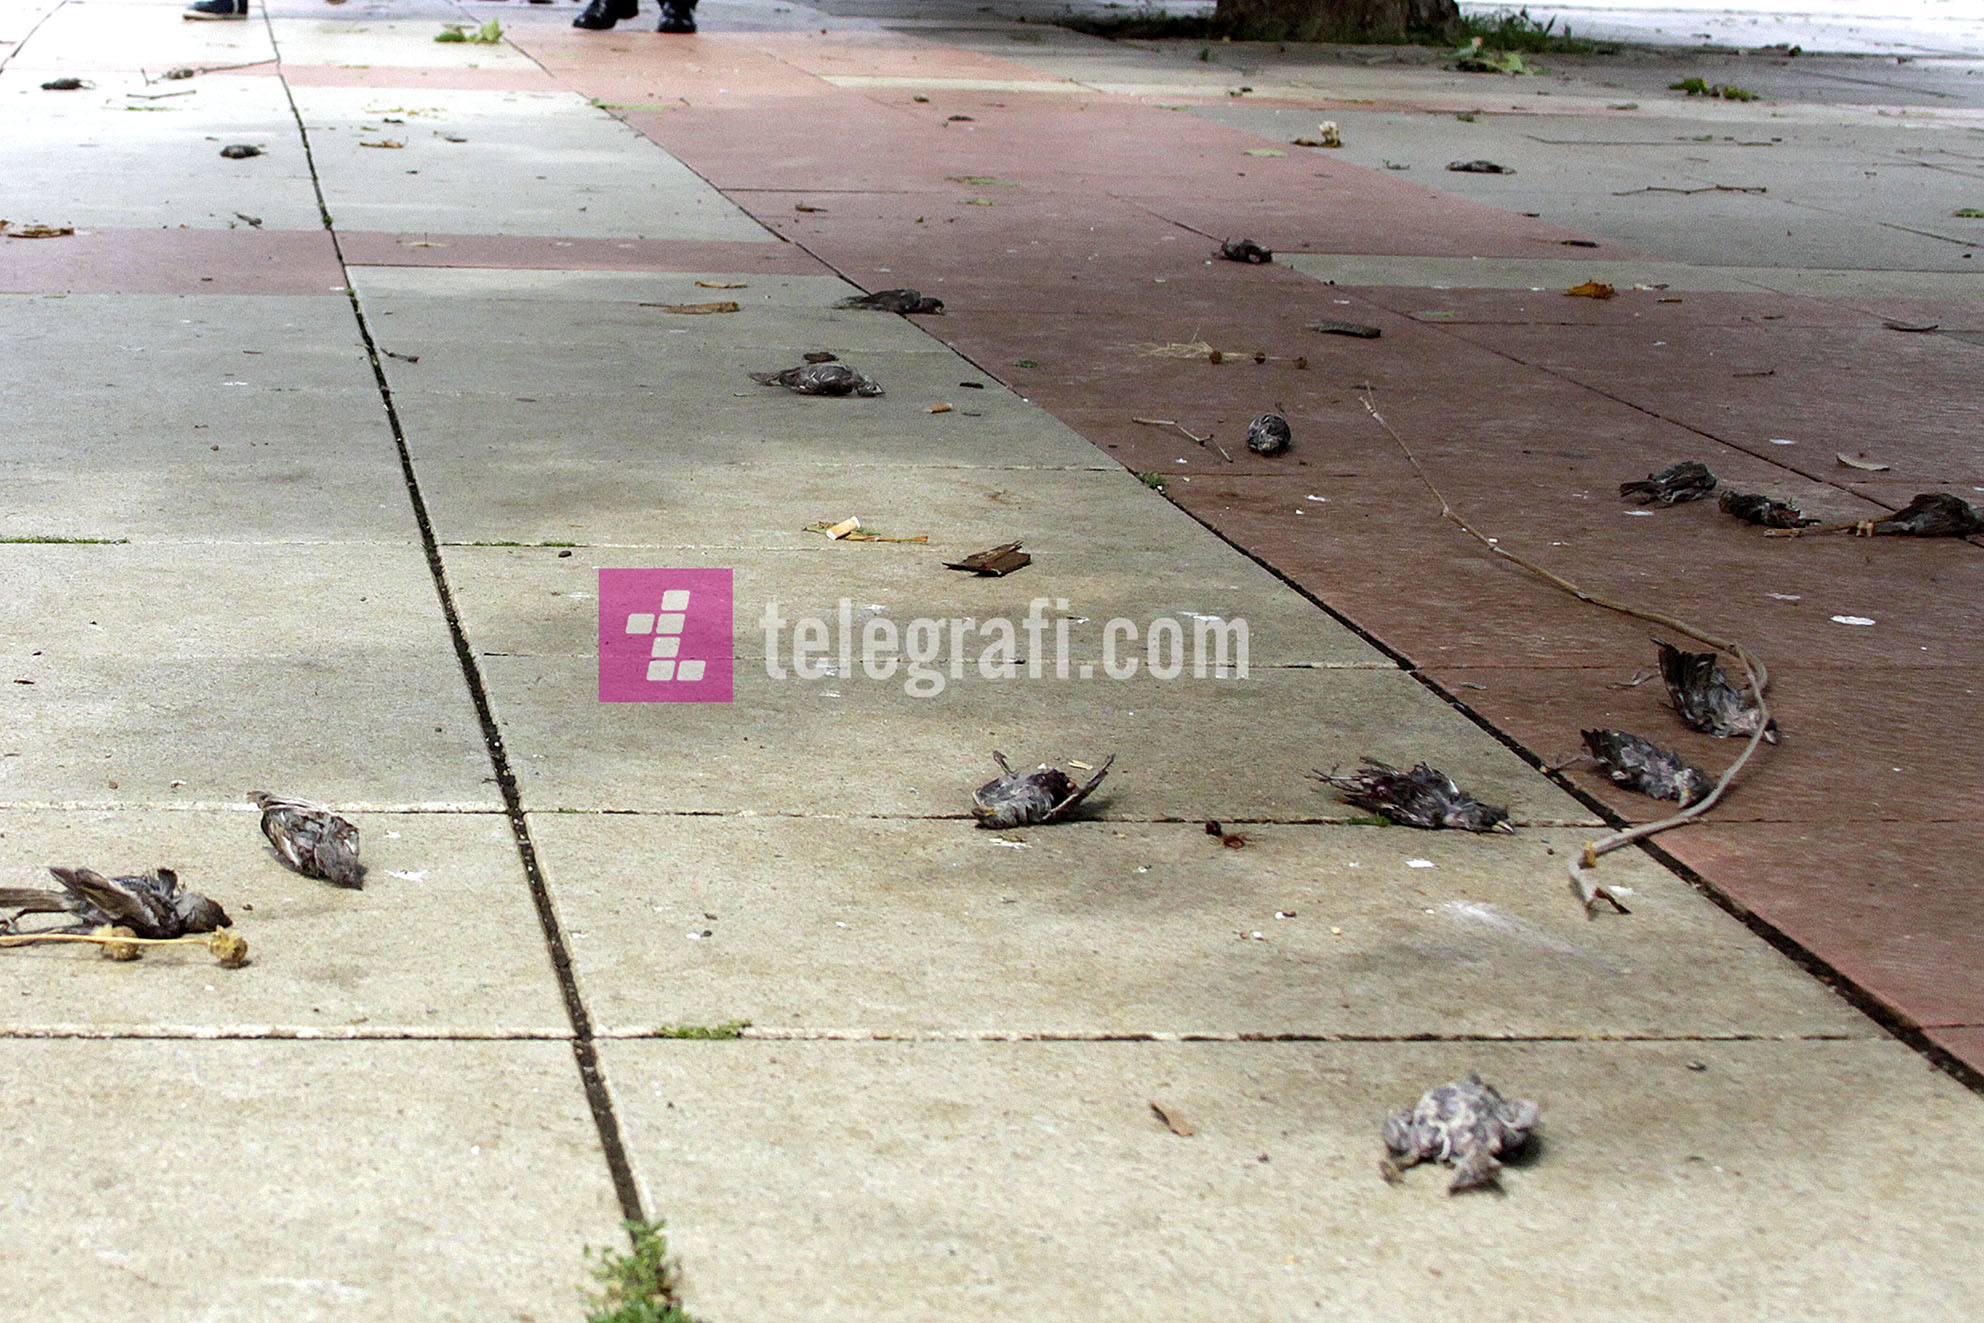 fotolajm - zogje te ngordhur nga shiu ne prishtine - foto ridvan slivova (3)